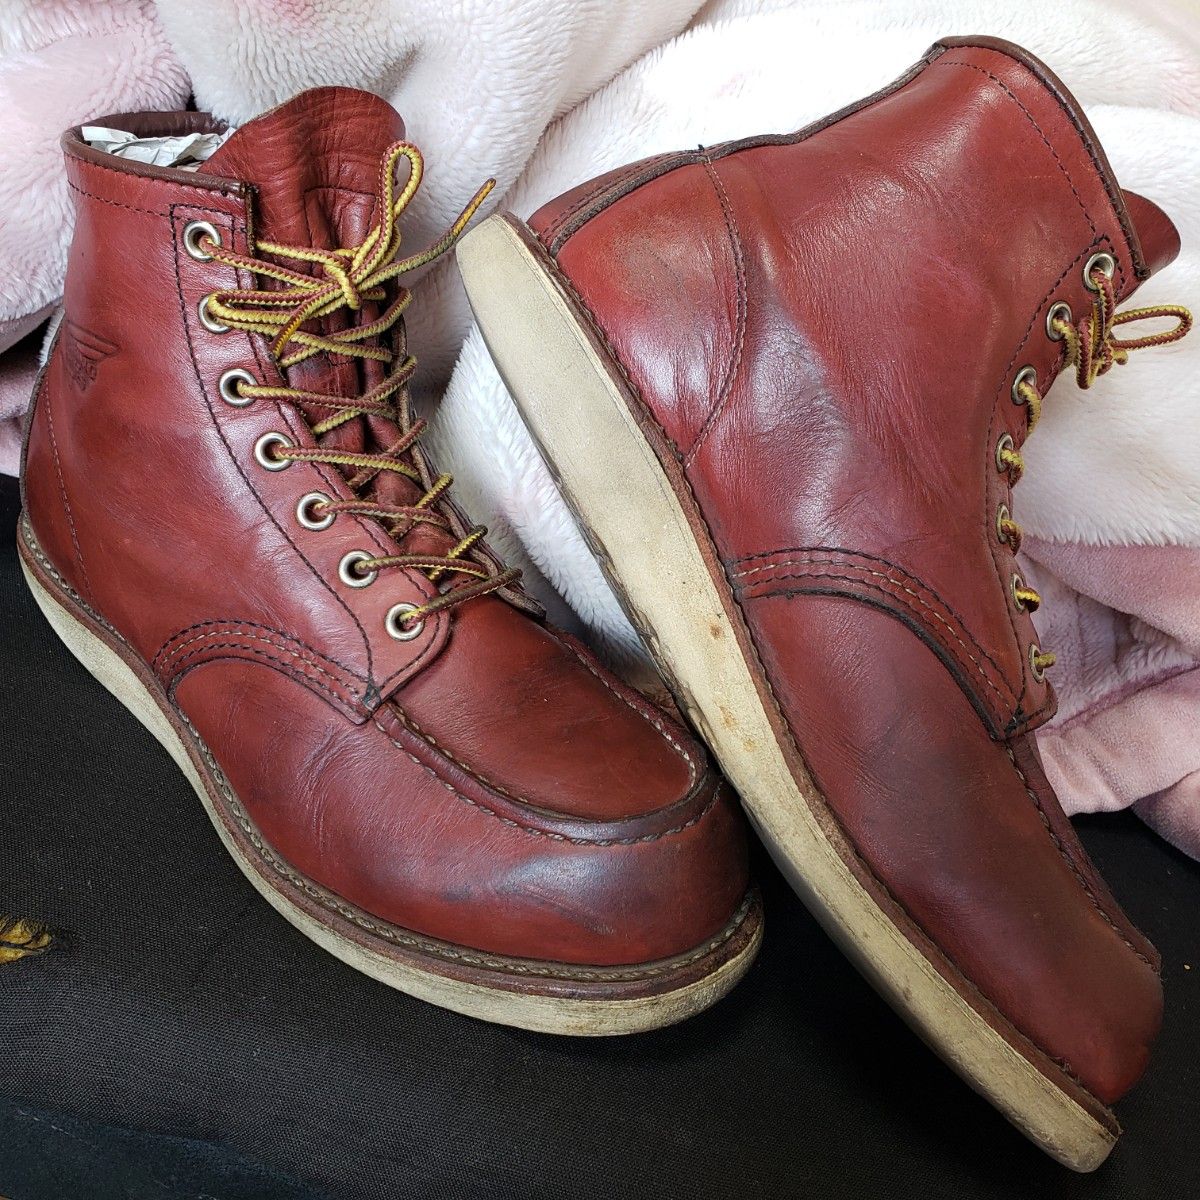 REDWING レッドウィング 9106 アイリッシュセッター IRISHSETTER 皮革 leather ブーツ boots